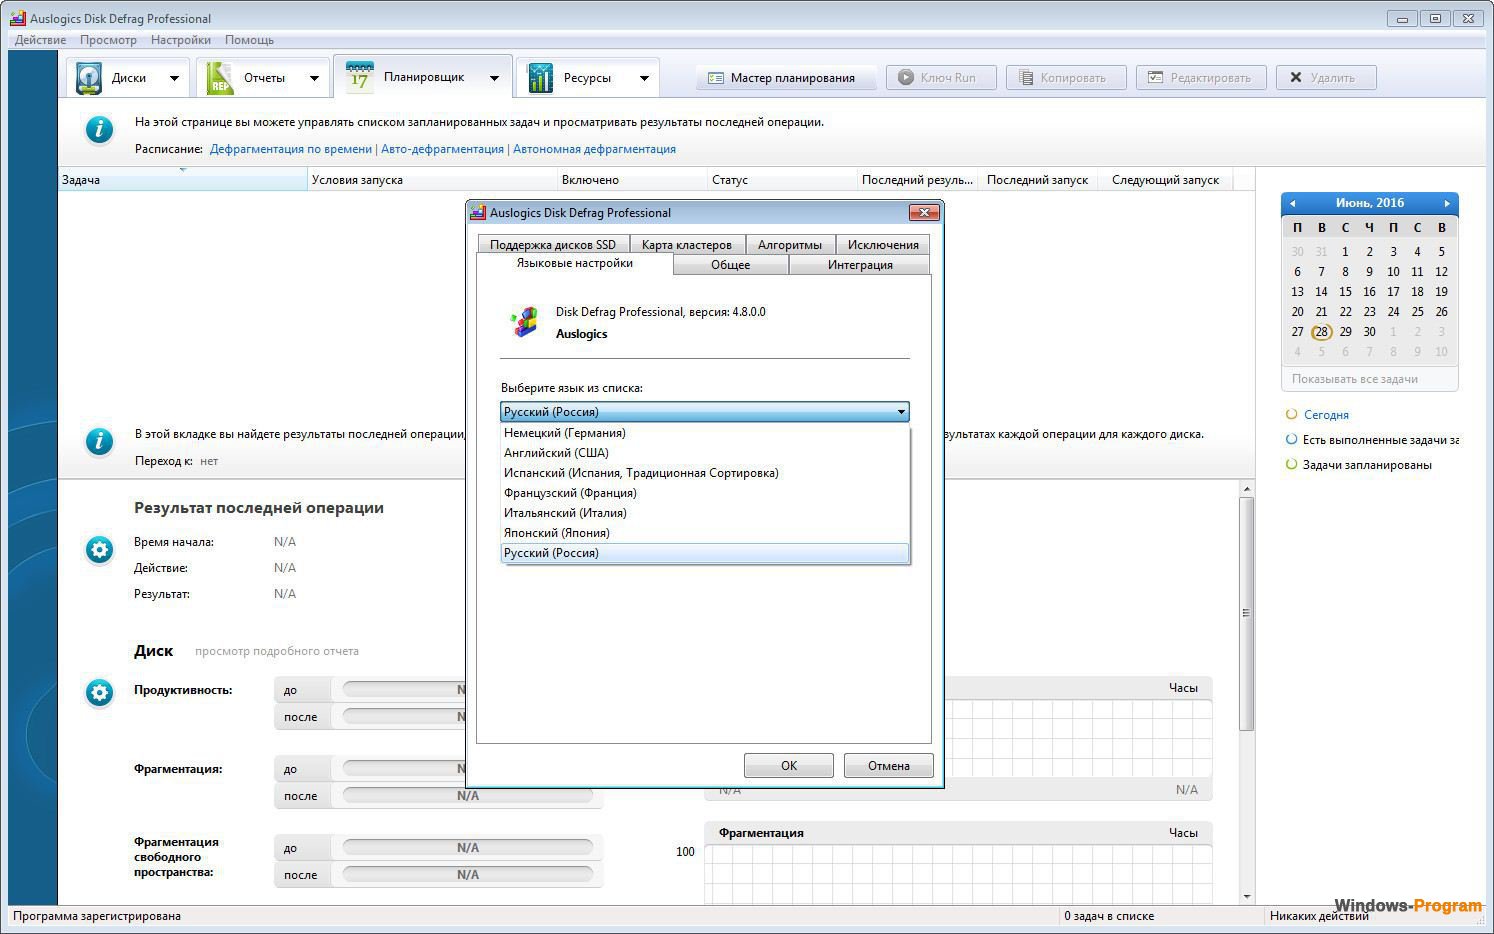 Auslogics Disk Defrag Pro 11.0.0.4 / Ultimate 4.13.0.1 for ipod instal